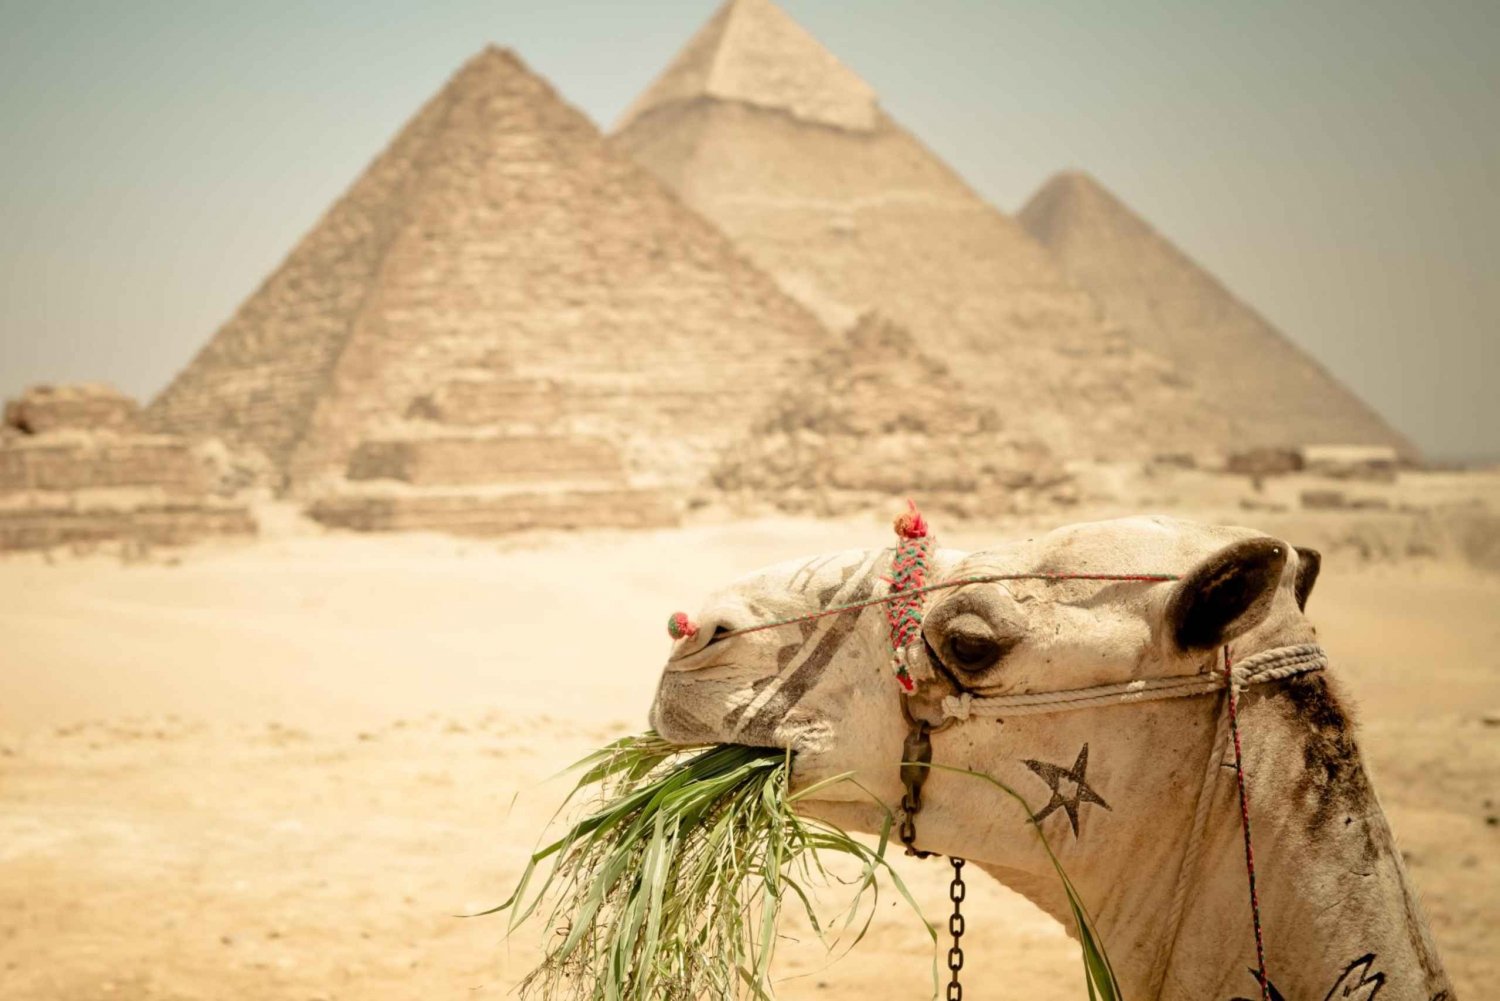 Kairo: Pyramideomvisning, båttur og lunsj på Cafelucca